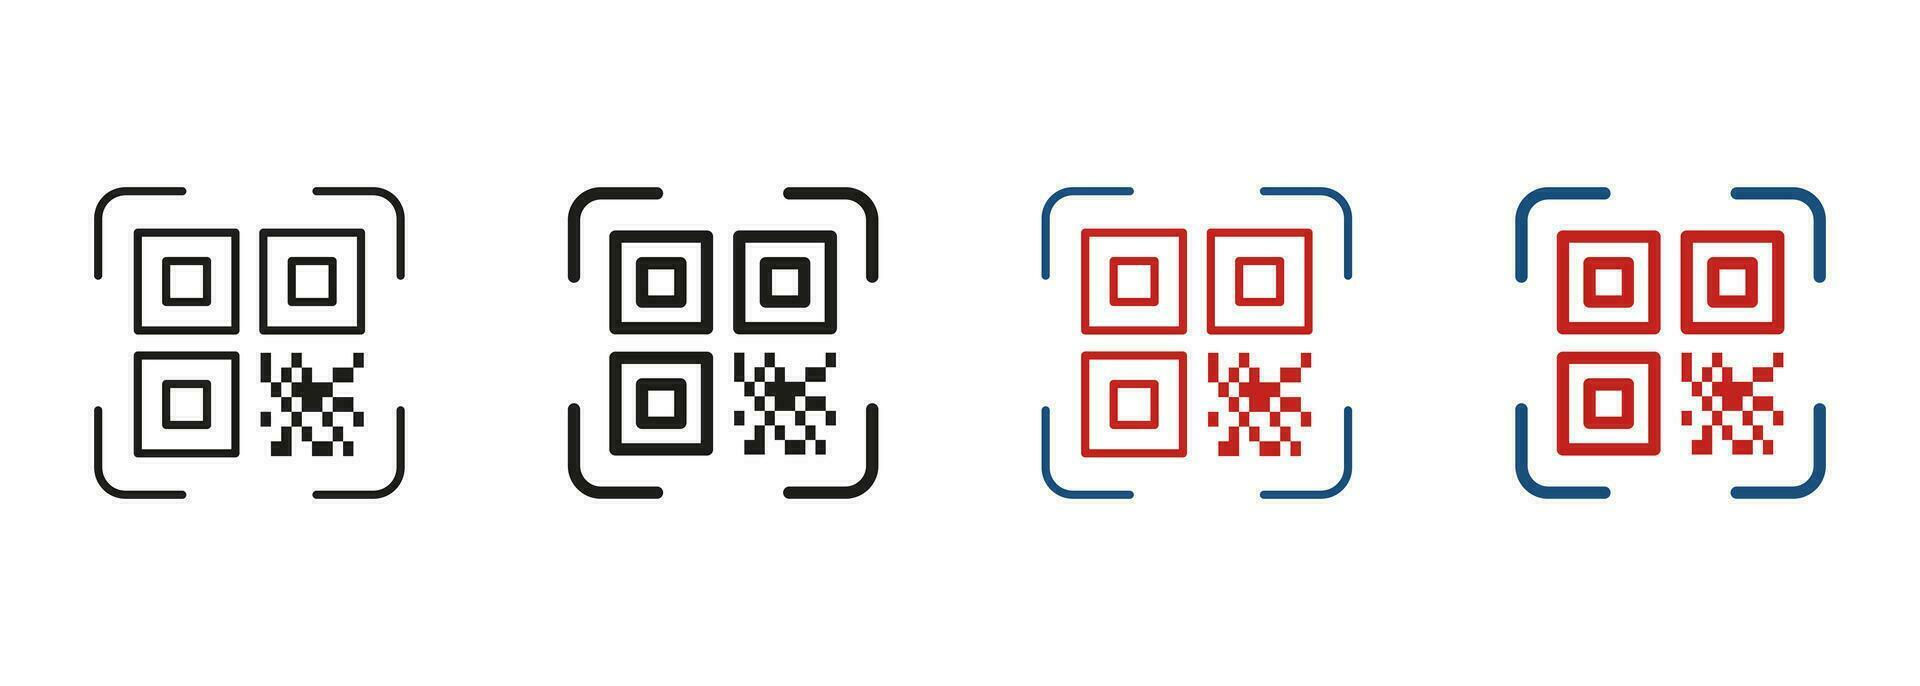 qr code scanner lijn en silhouet icoon set. instructie naar krijgen informatie. technologie toepassing voor identificatie Product symbool verzameling. scannen QR code pictogram. geïsoleerd vector illustratie.